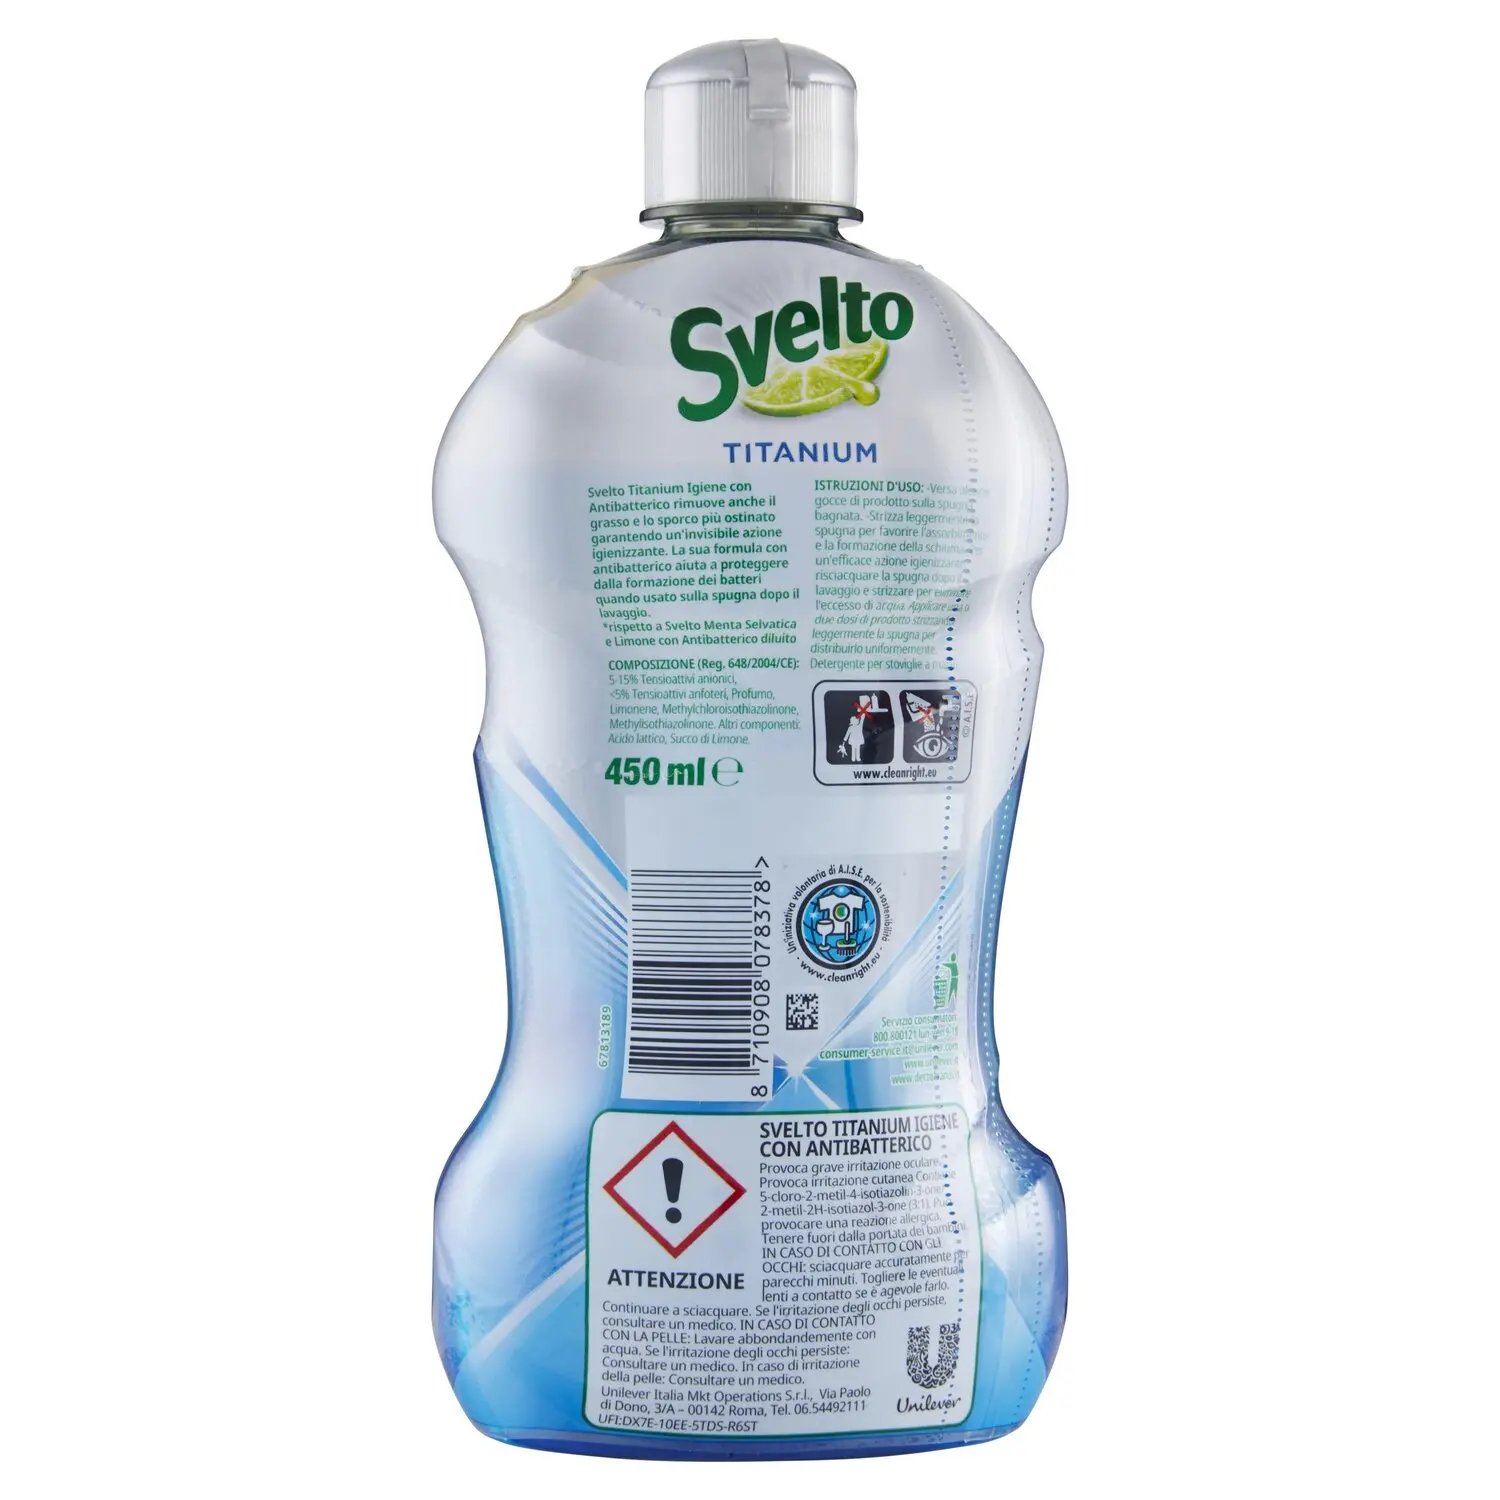 SVELTO PROFESSIONAL detergente manuale per piatti al Limone 2 Litri - 6pz